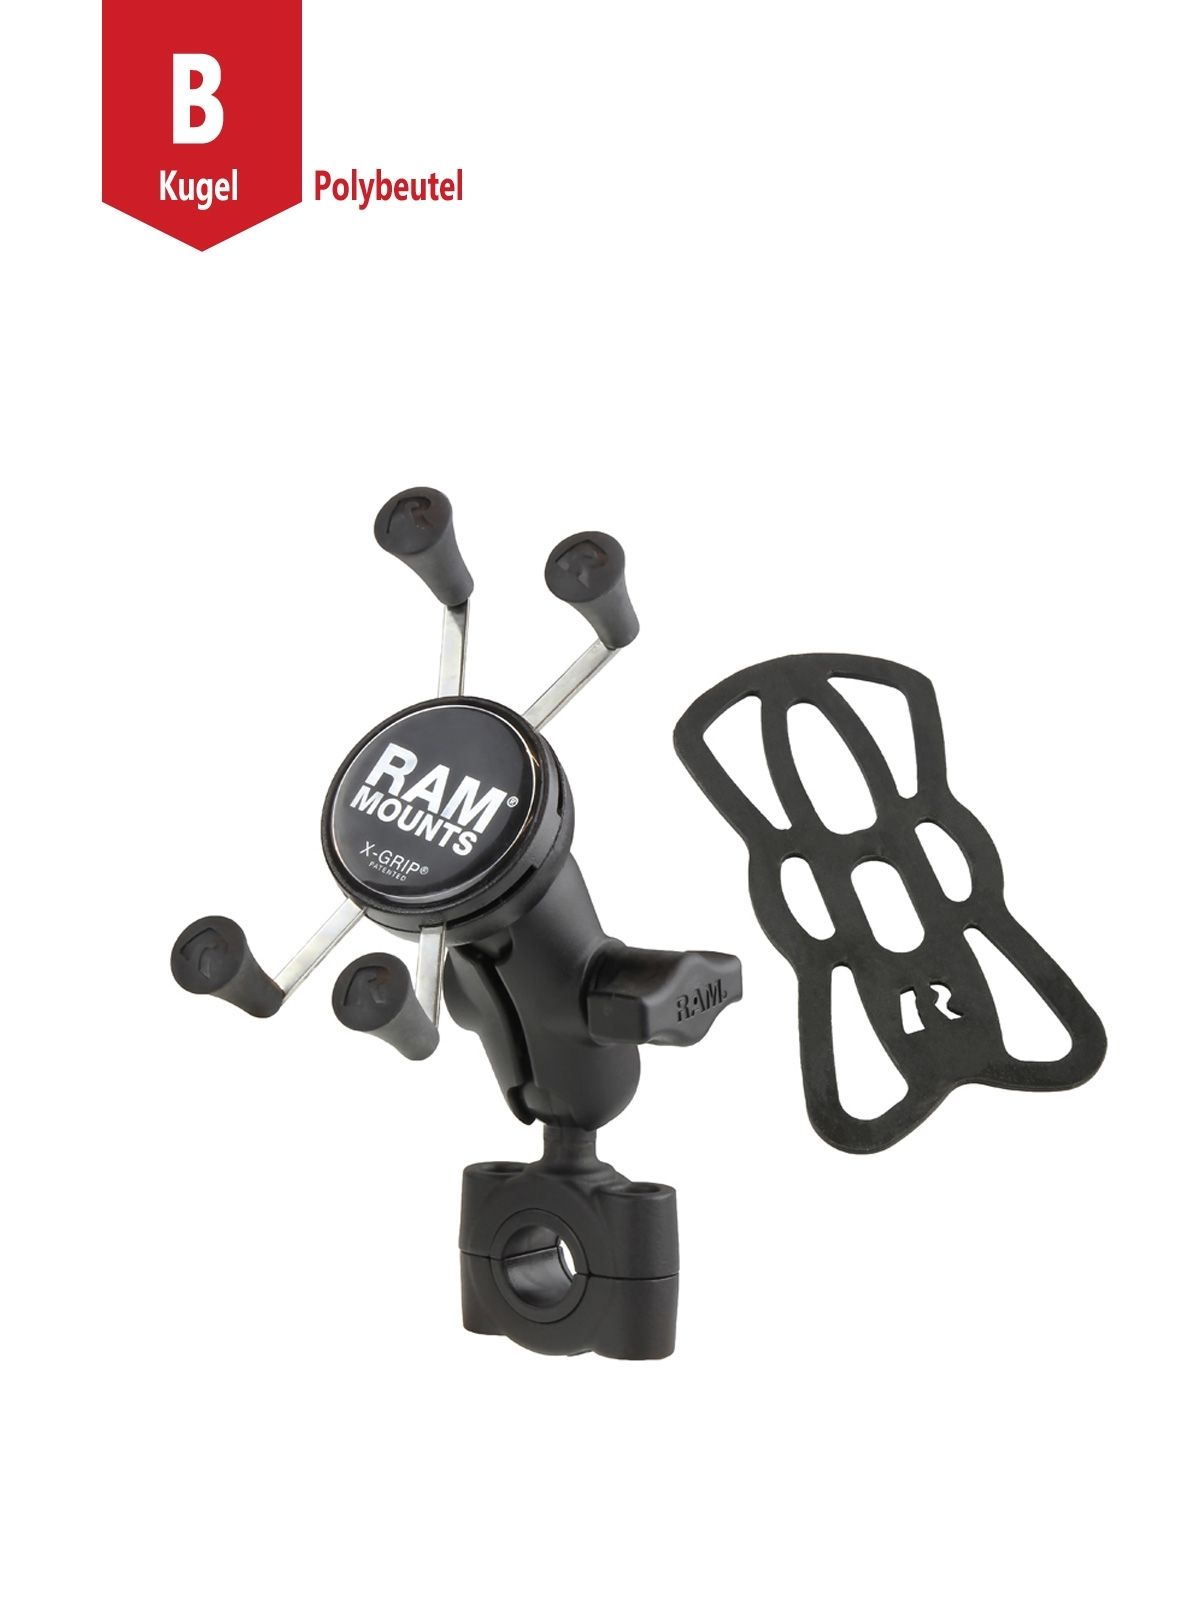 RAM Mounts X-Grip Motorrad-Halterung für Smartphones bis 82,6 mm Breite - B-Kugel (1 Zoll), Torque-Schraubklemme (Durchmesser 19,0-25,0 mm), kurzer Verbindungsarm